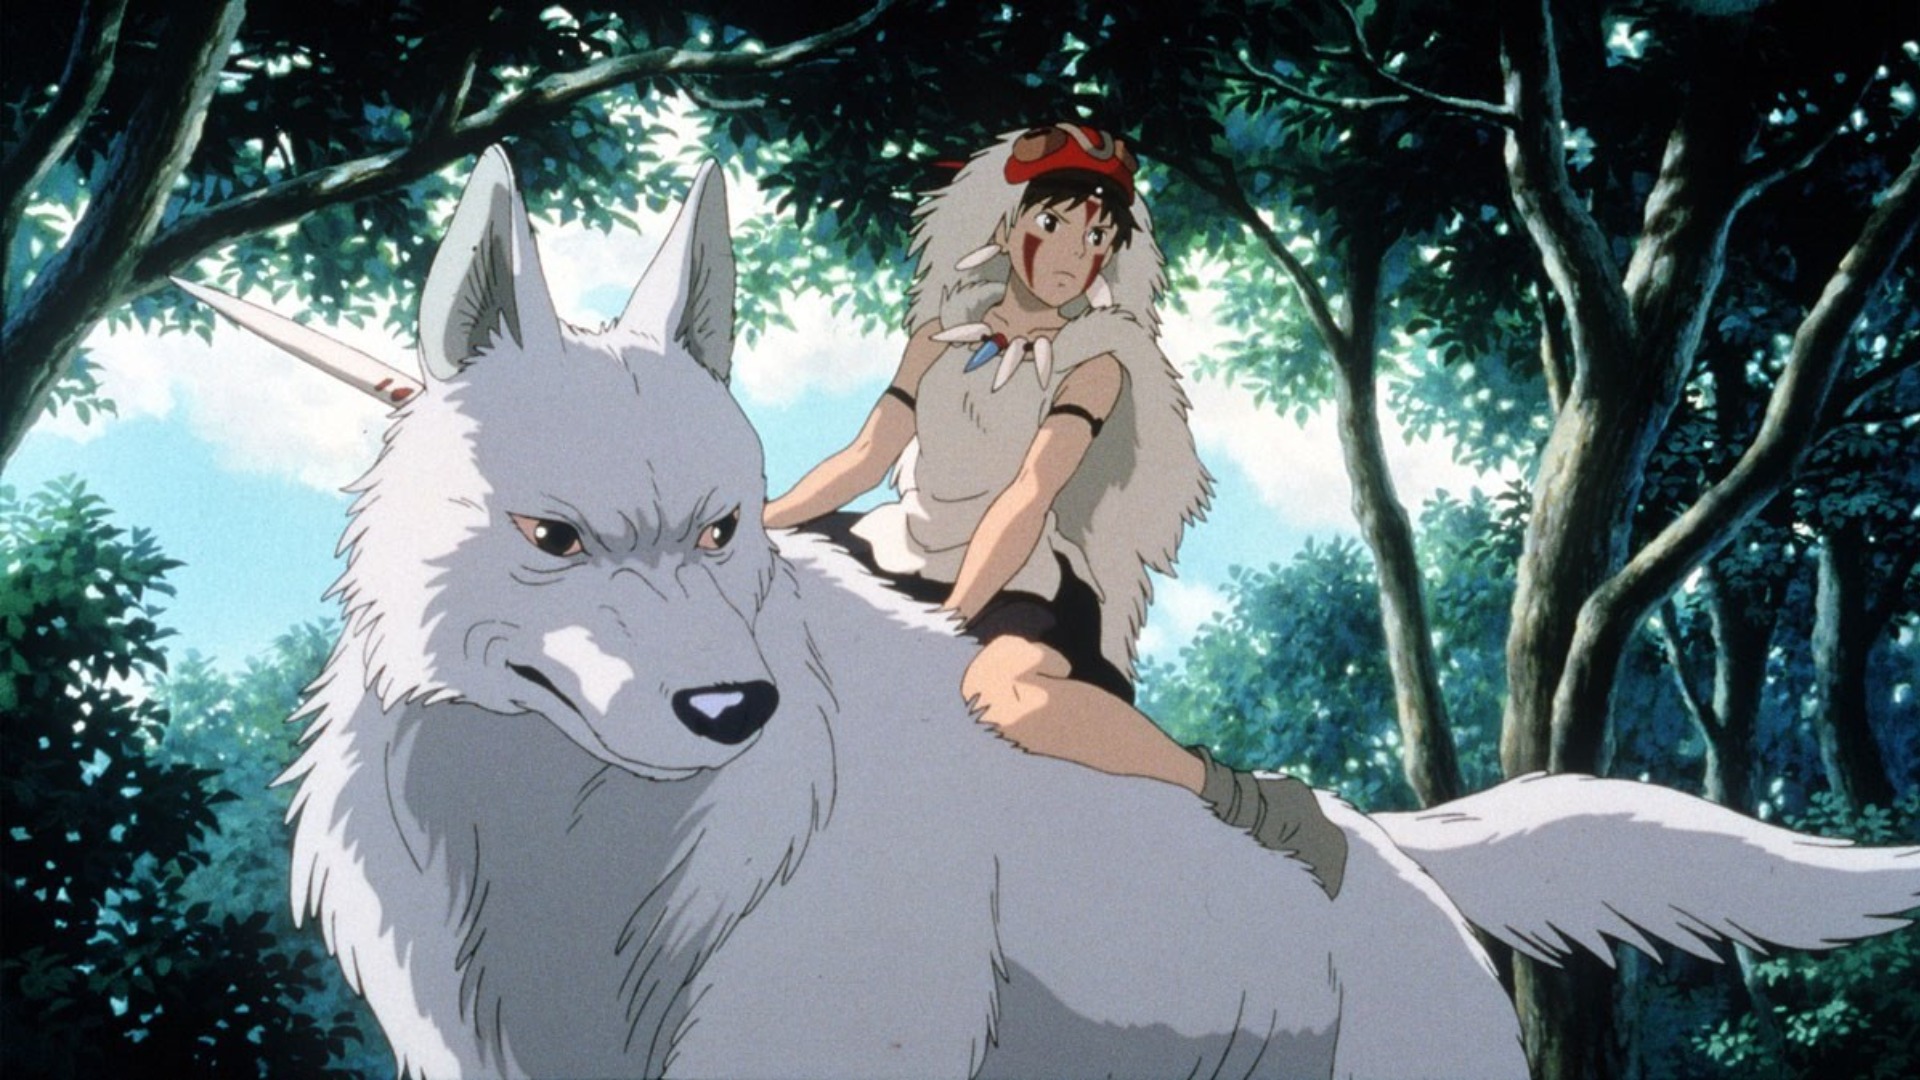 San montando seu lobo em Princess Mononoke.